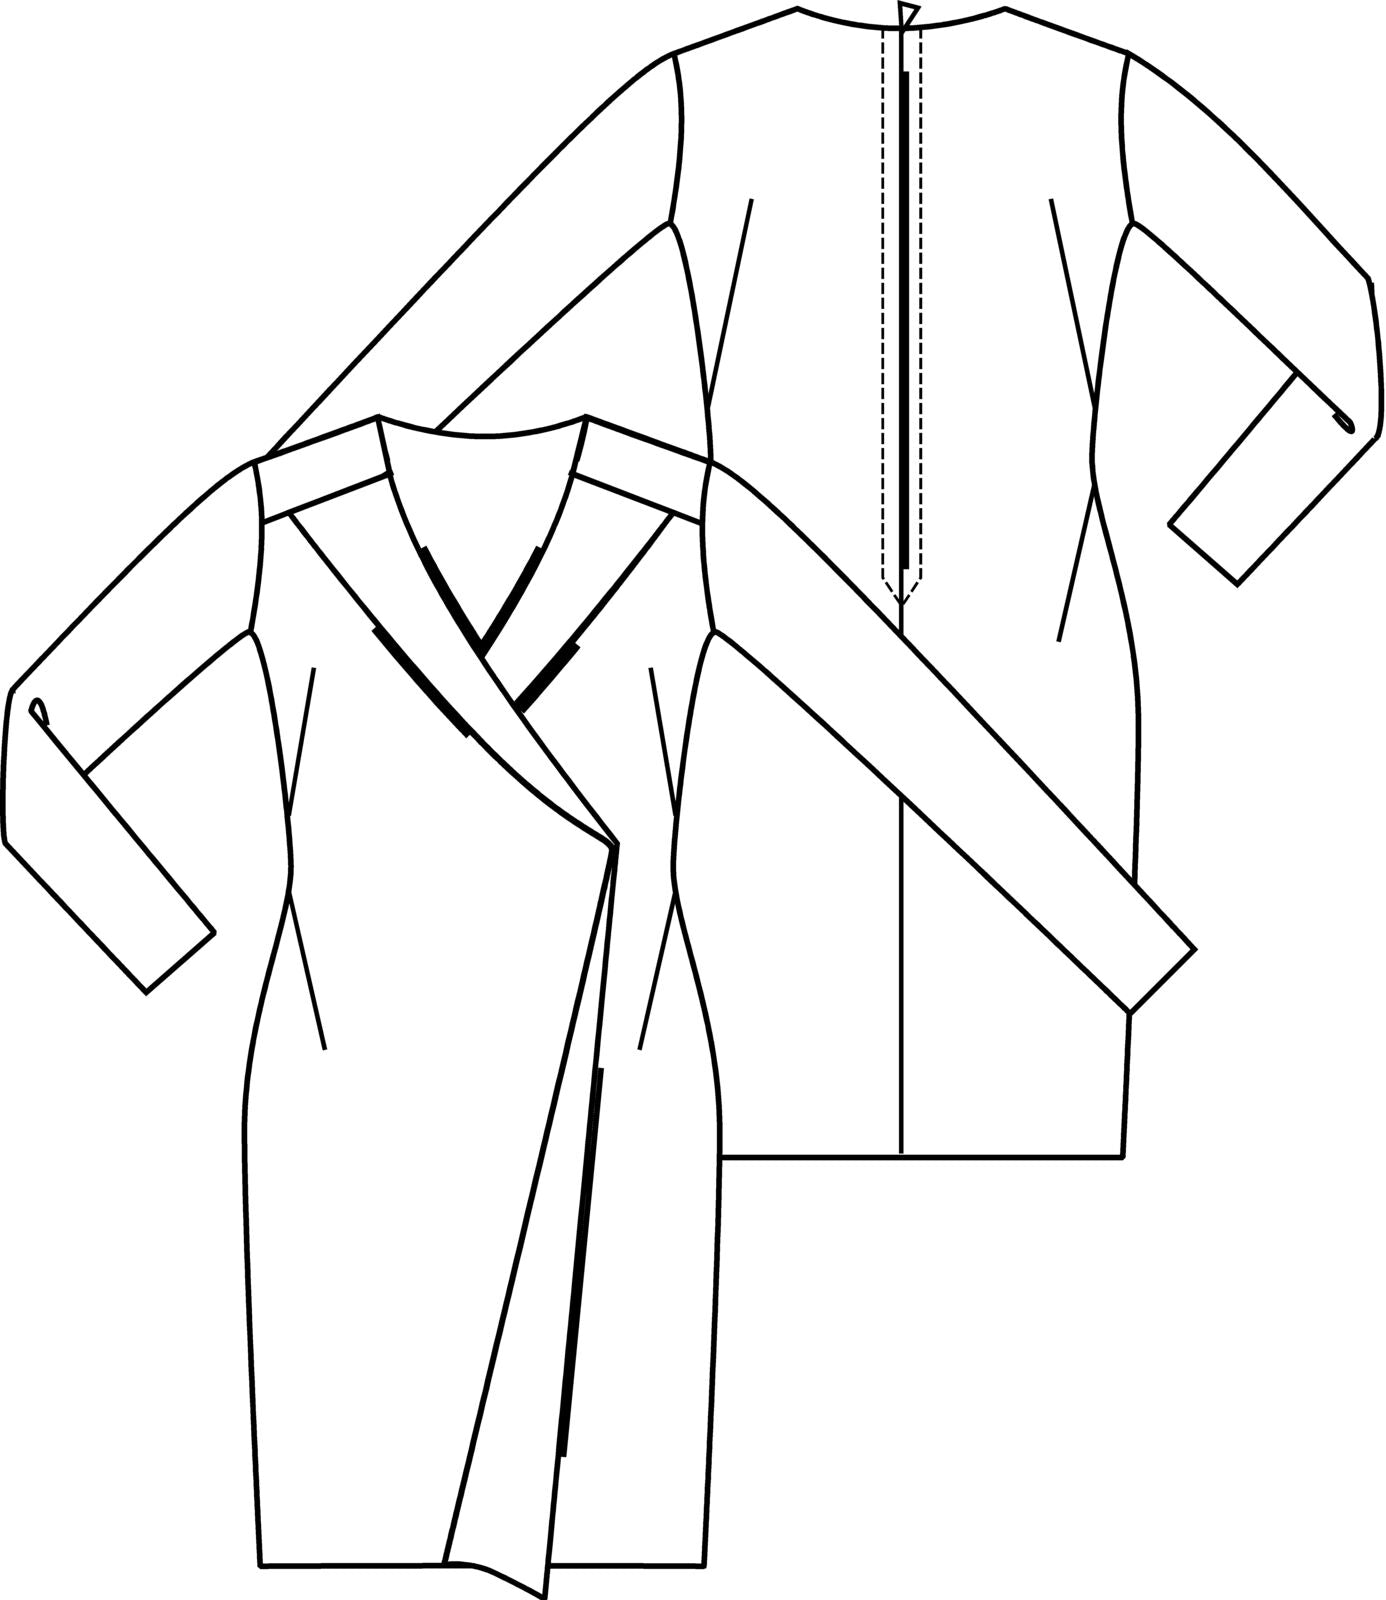 Schnitt 1801 – 23 Kleiderstücke